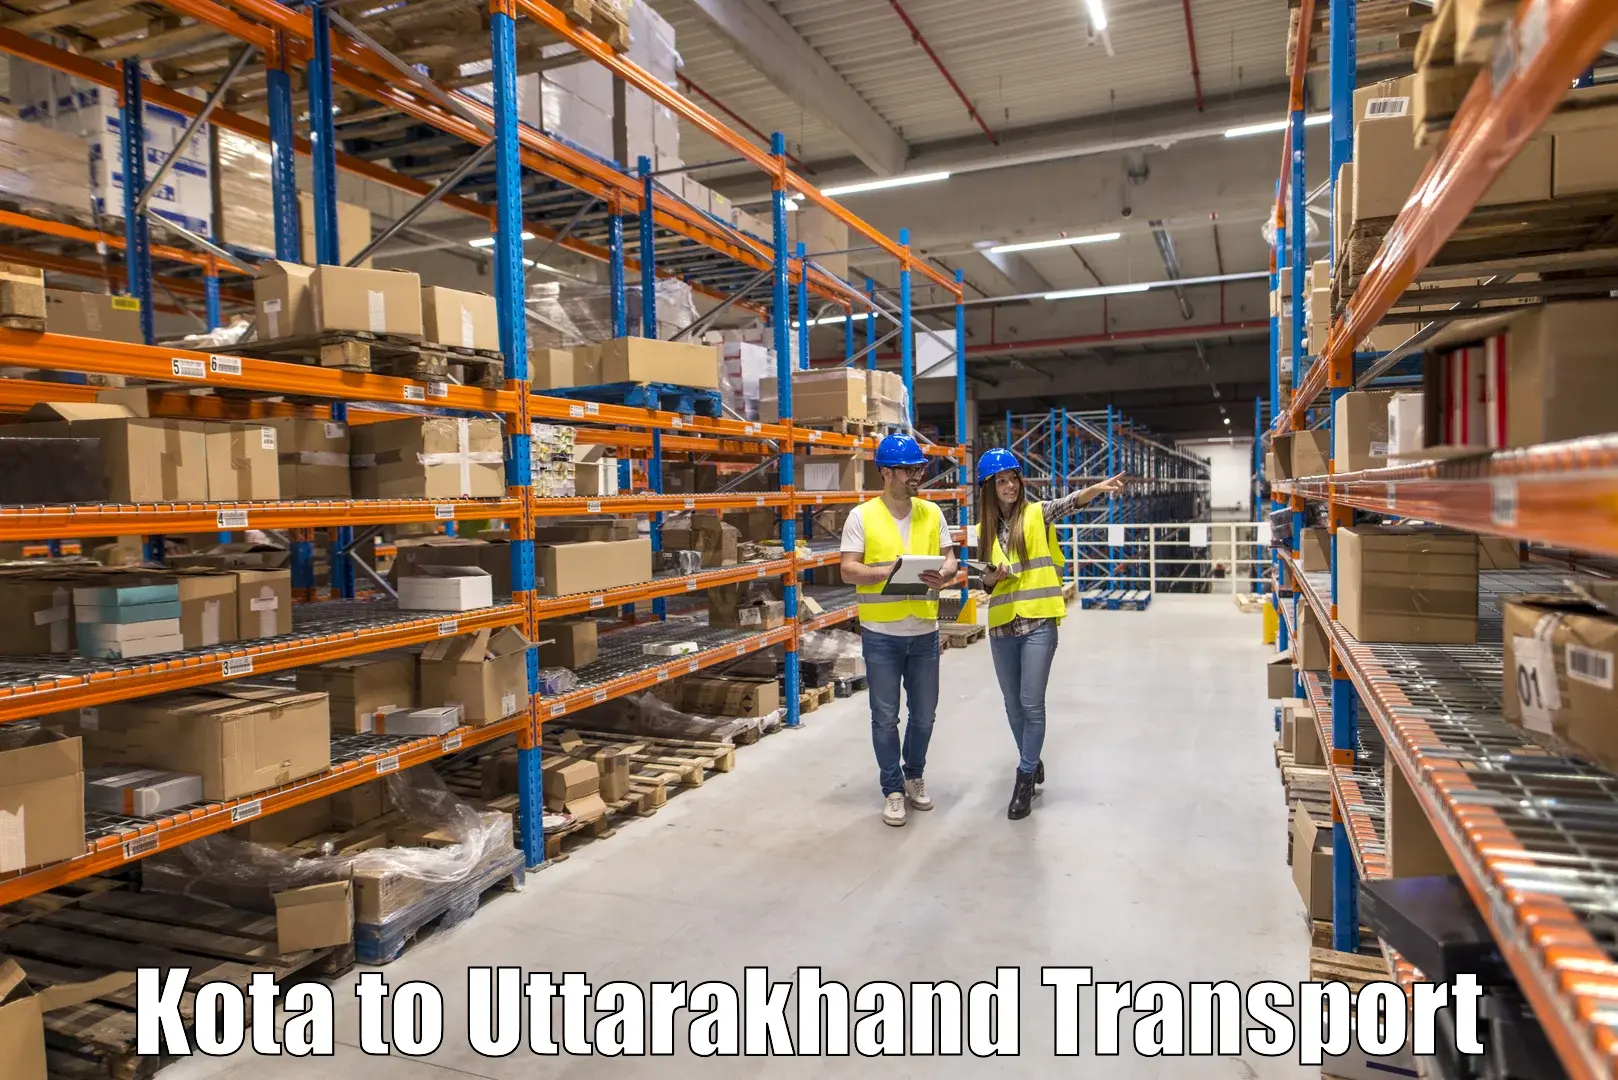 Online transport booking Kota to Uttarakhand